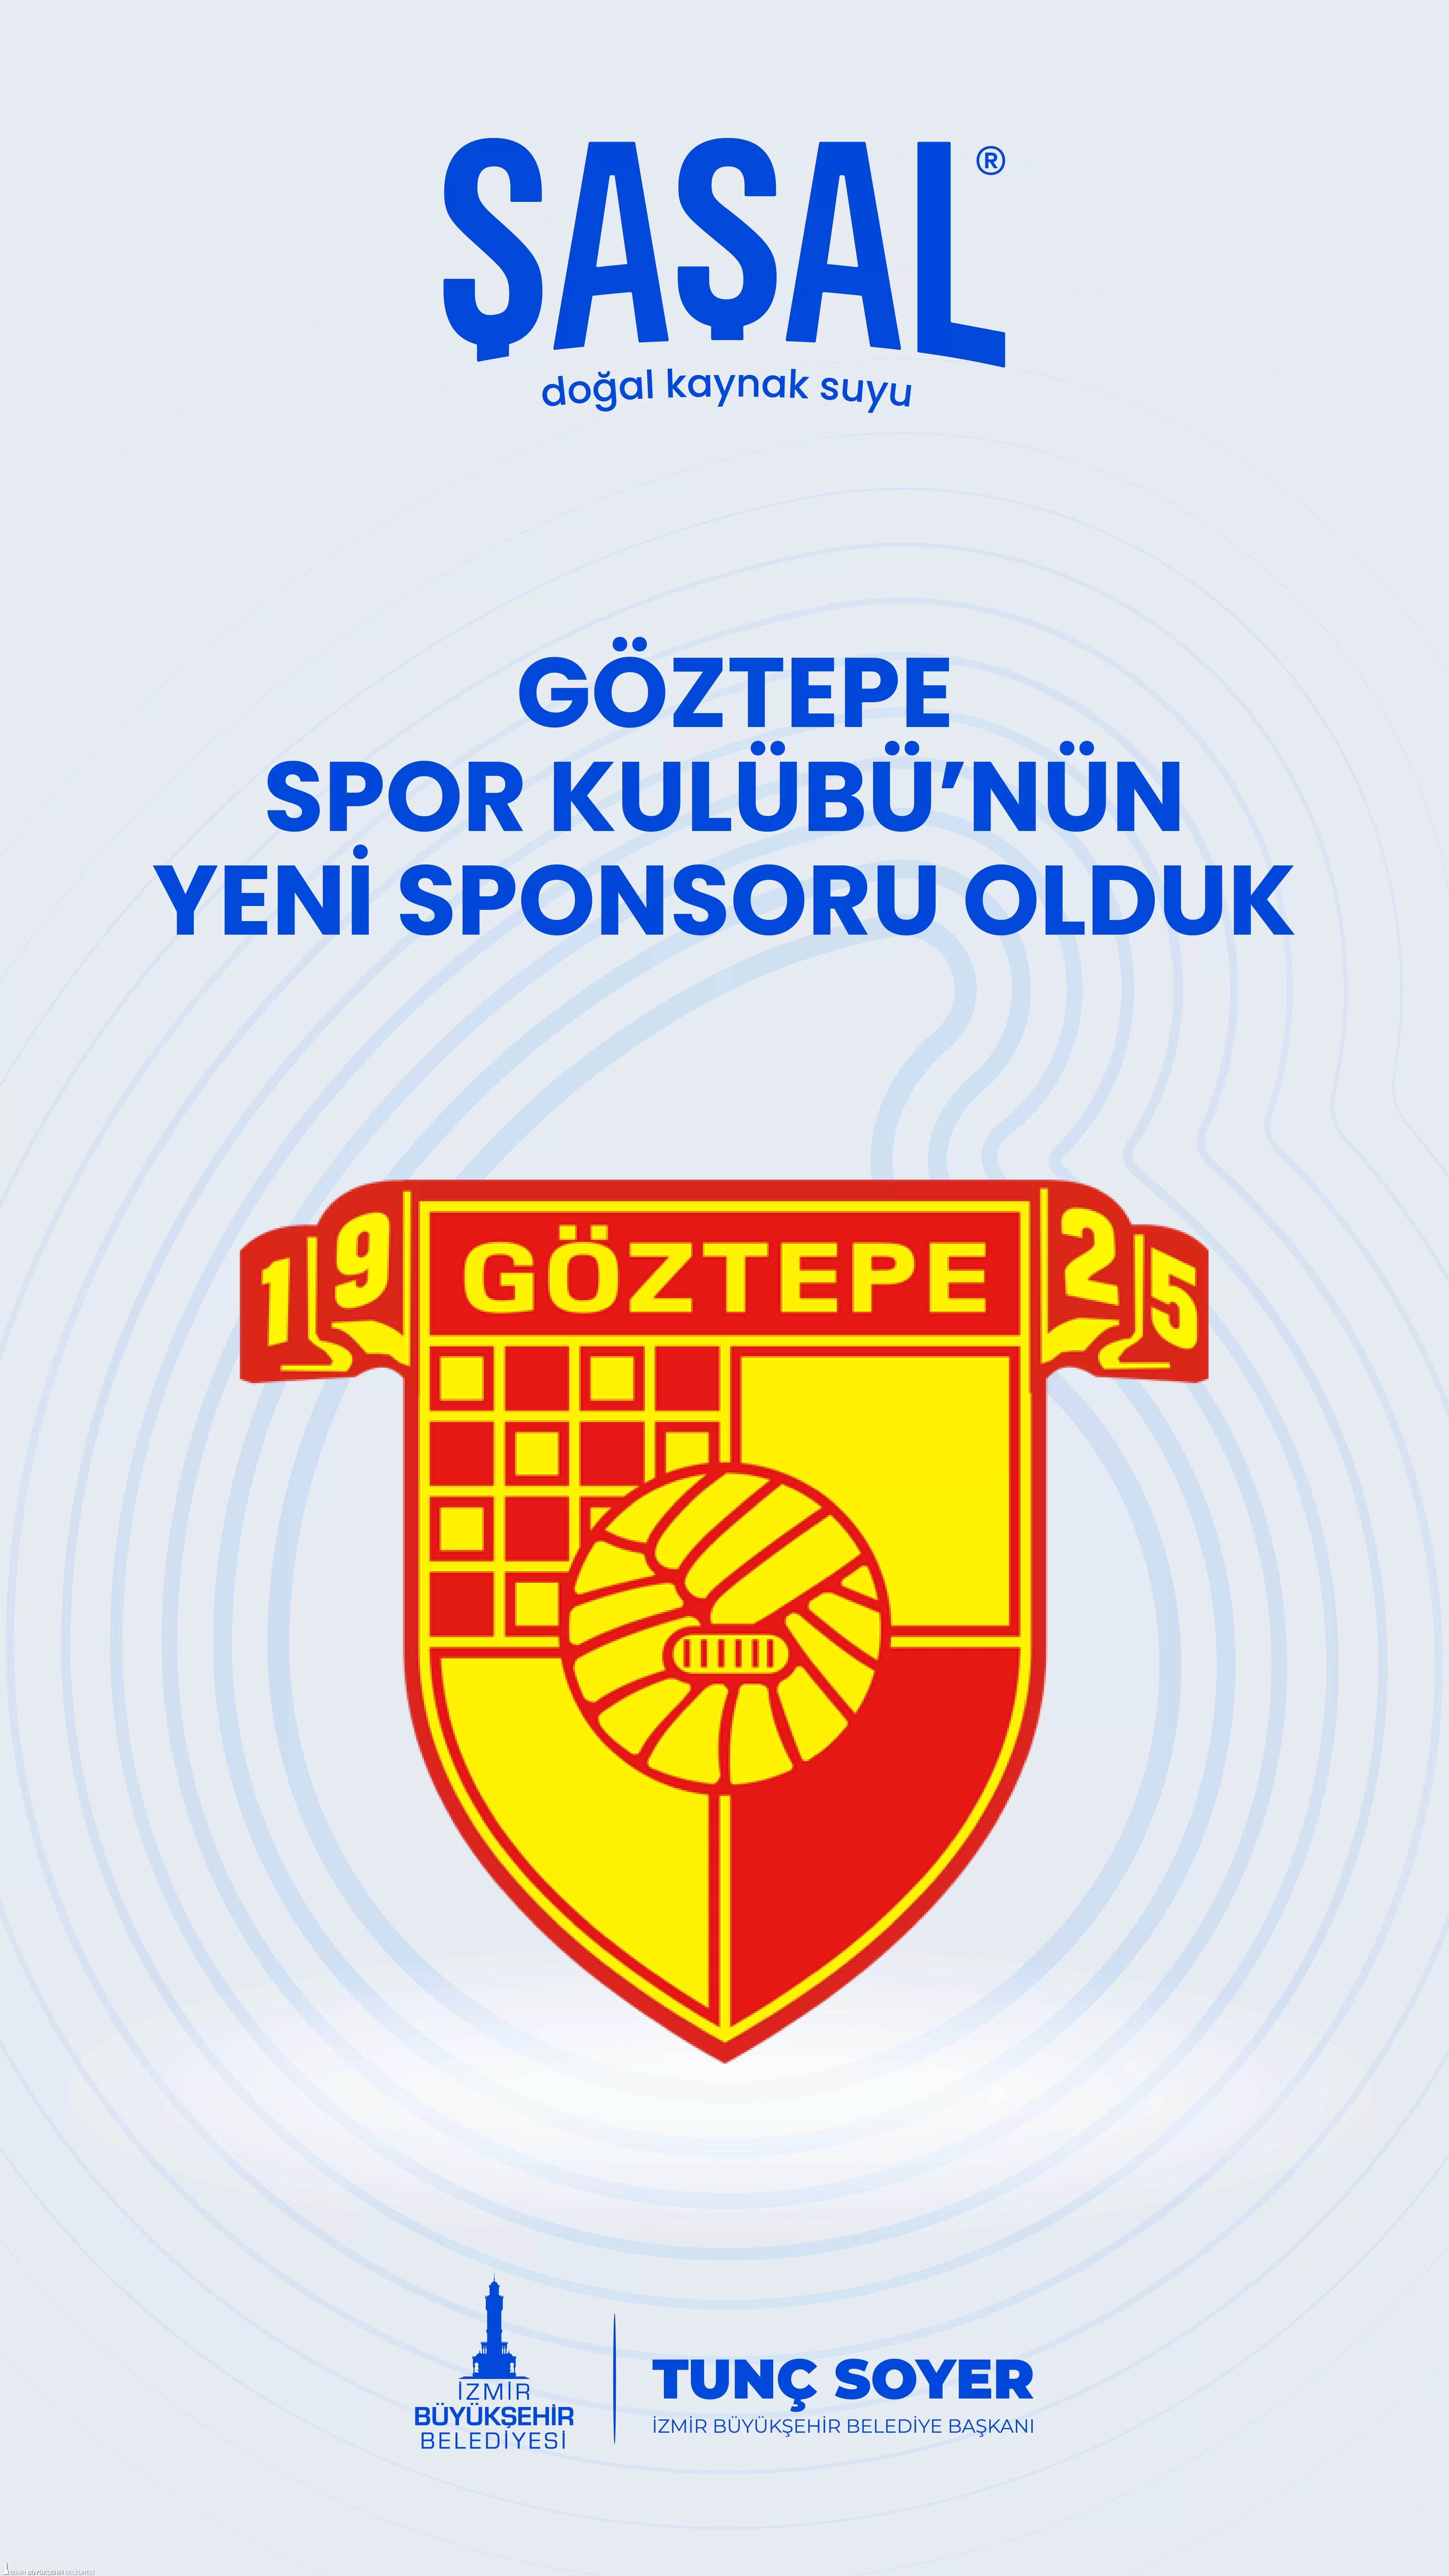 İzmir'in köklü markası Şaşal Su, Göztepe Spor Kulübü'nün yeni sponsoru oldu. 2024-2025 futbol sezonunun sonuna kadar tüm resmi lig ve özel müsabakalarda Göztepe formasında Şaşal Su logosu yer alacak.